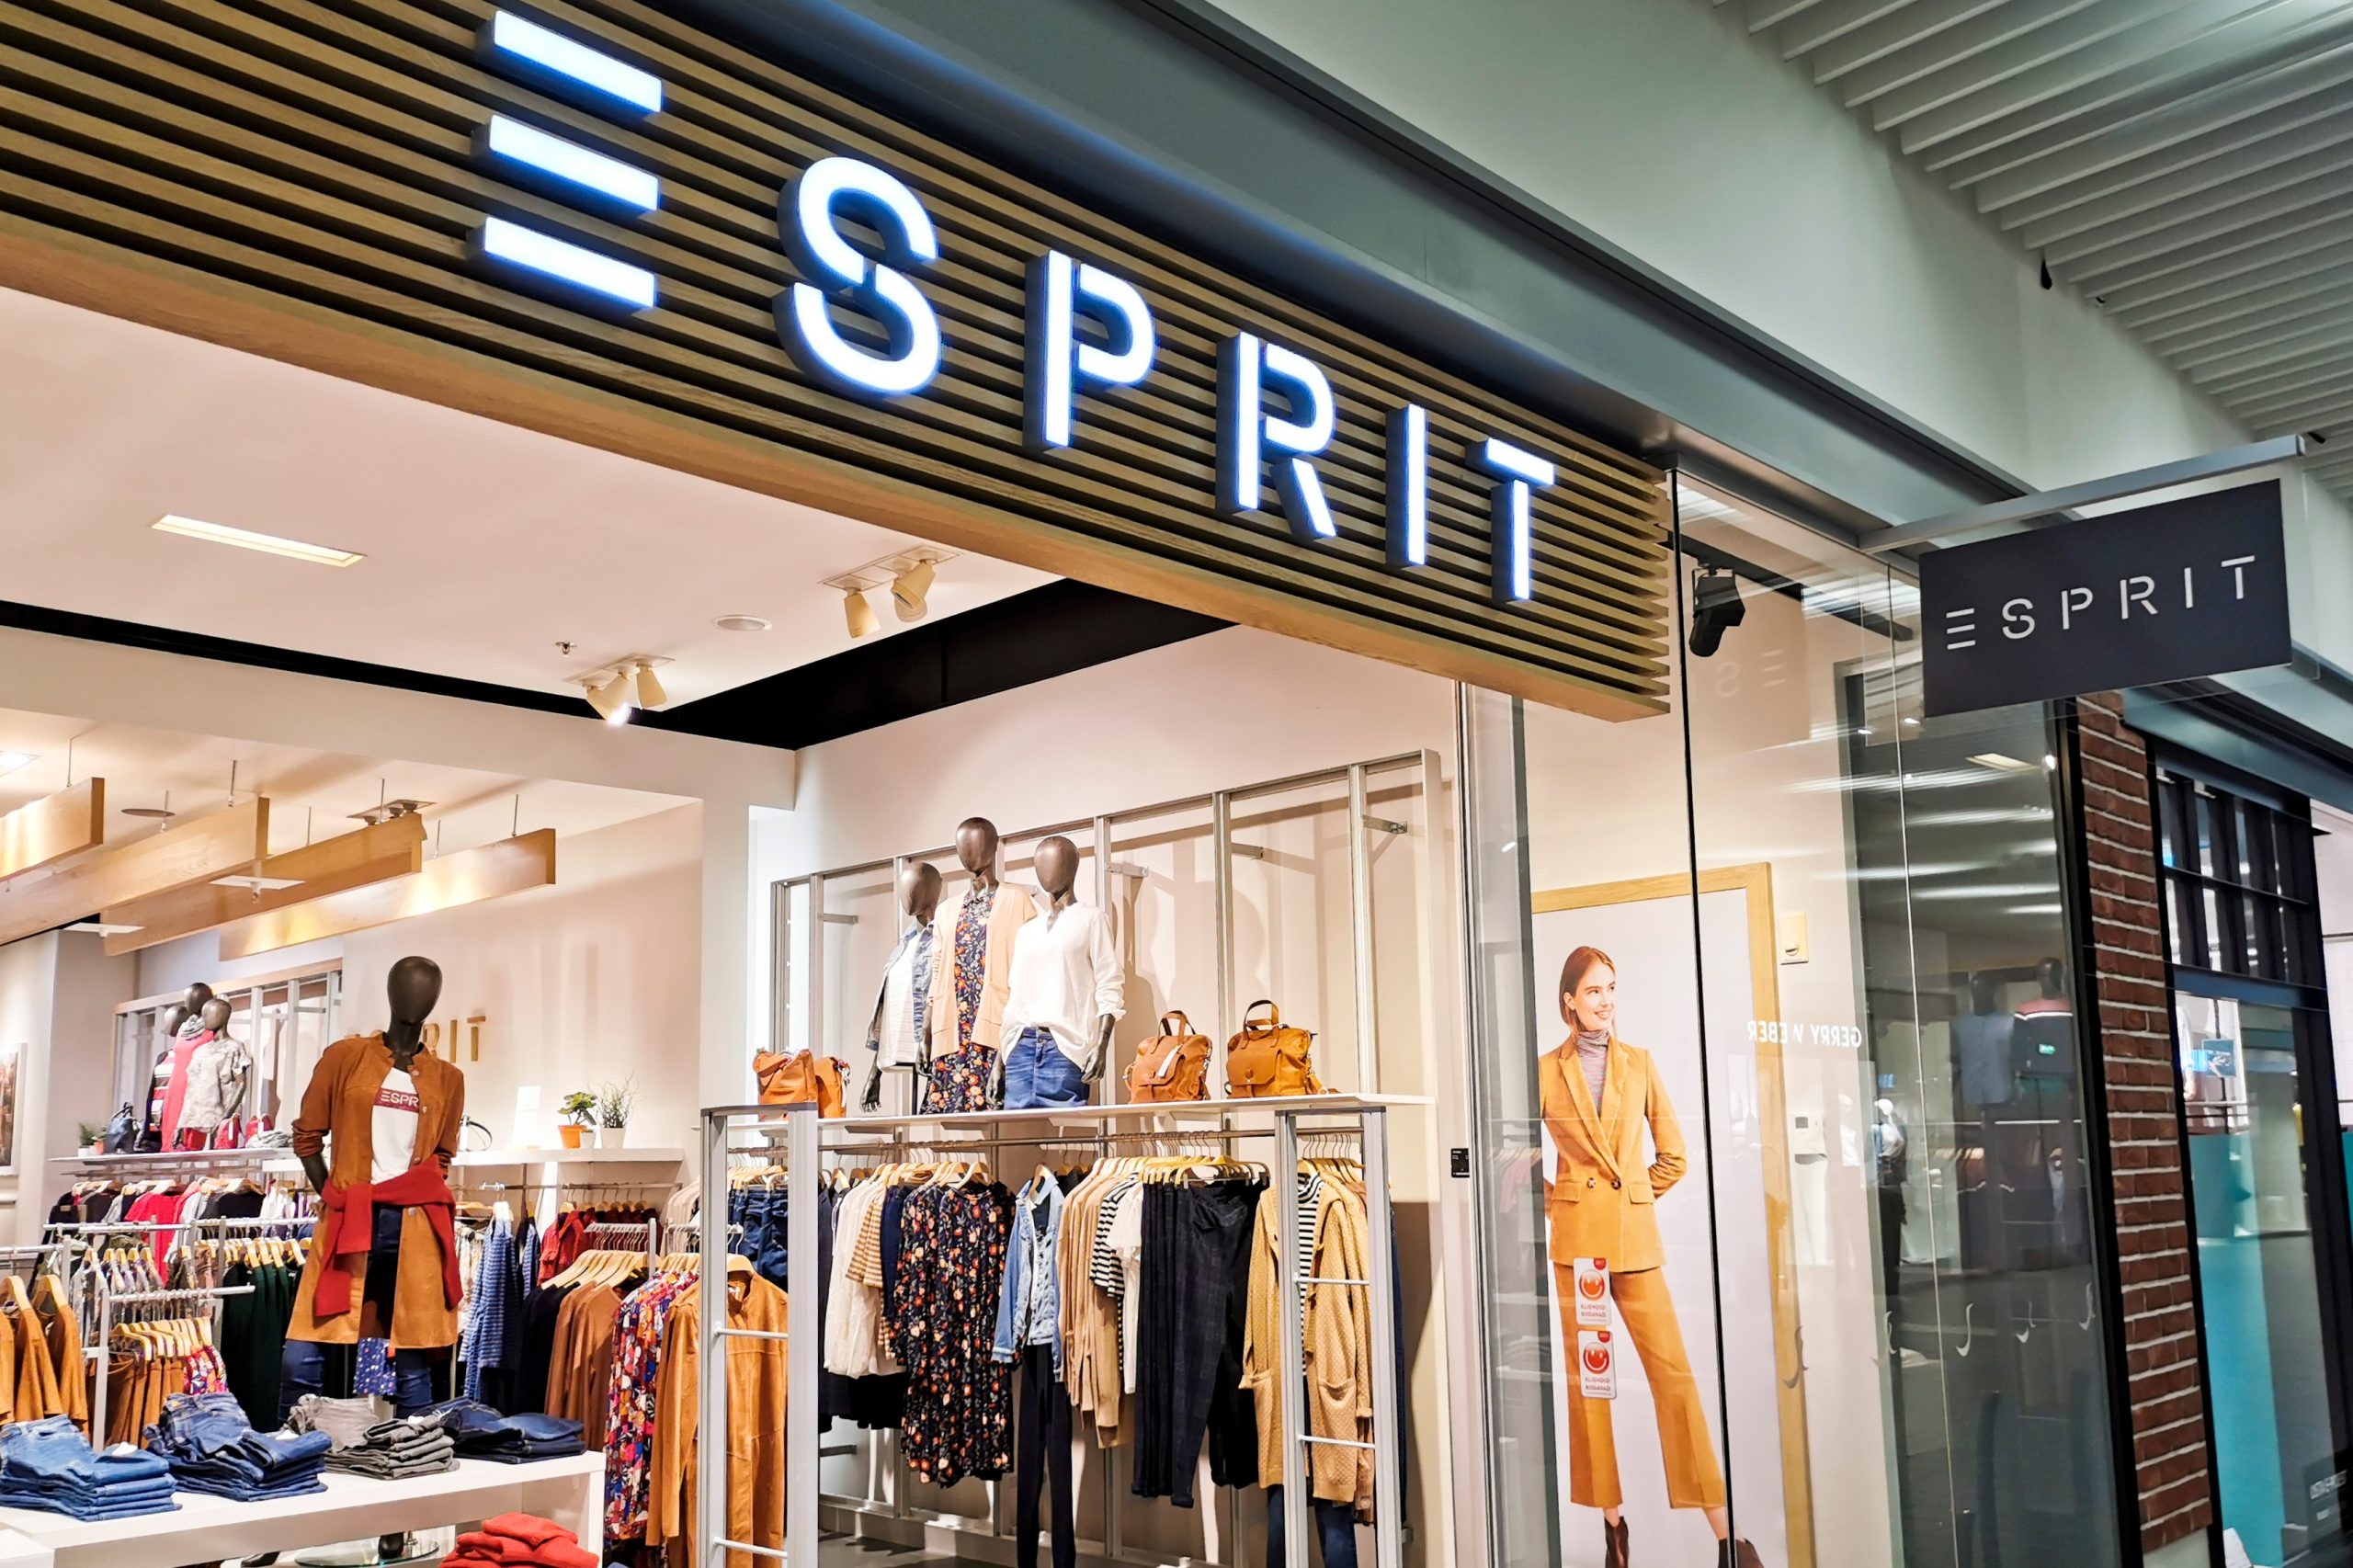 Verminderen Ontevreden gedragen Esprit appoints new chief product officer amid focus on online expansion -